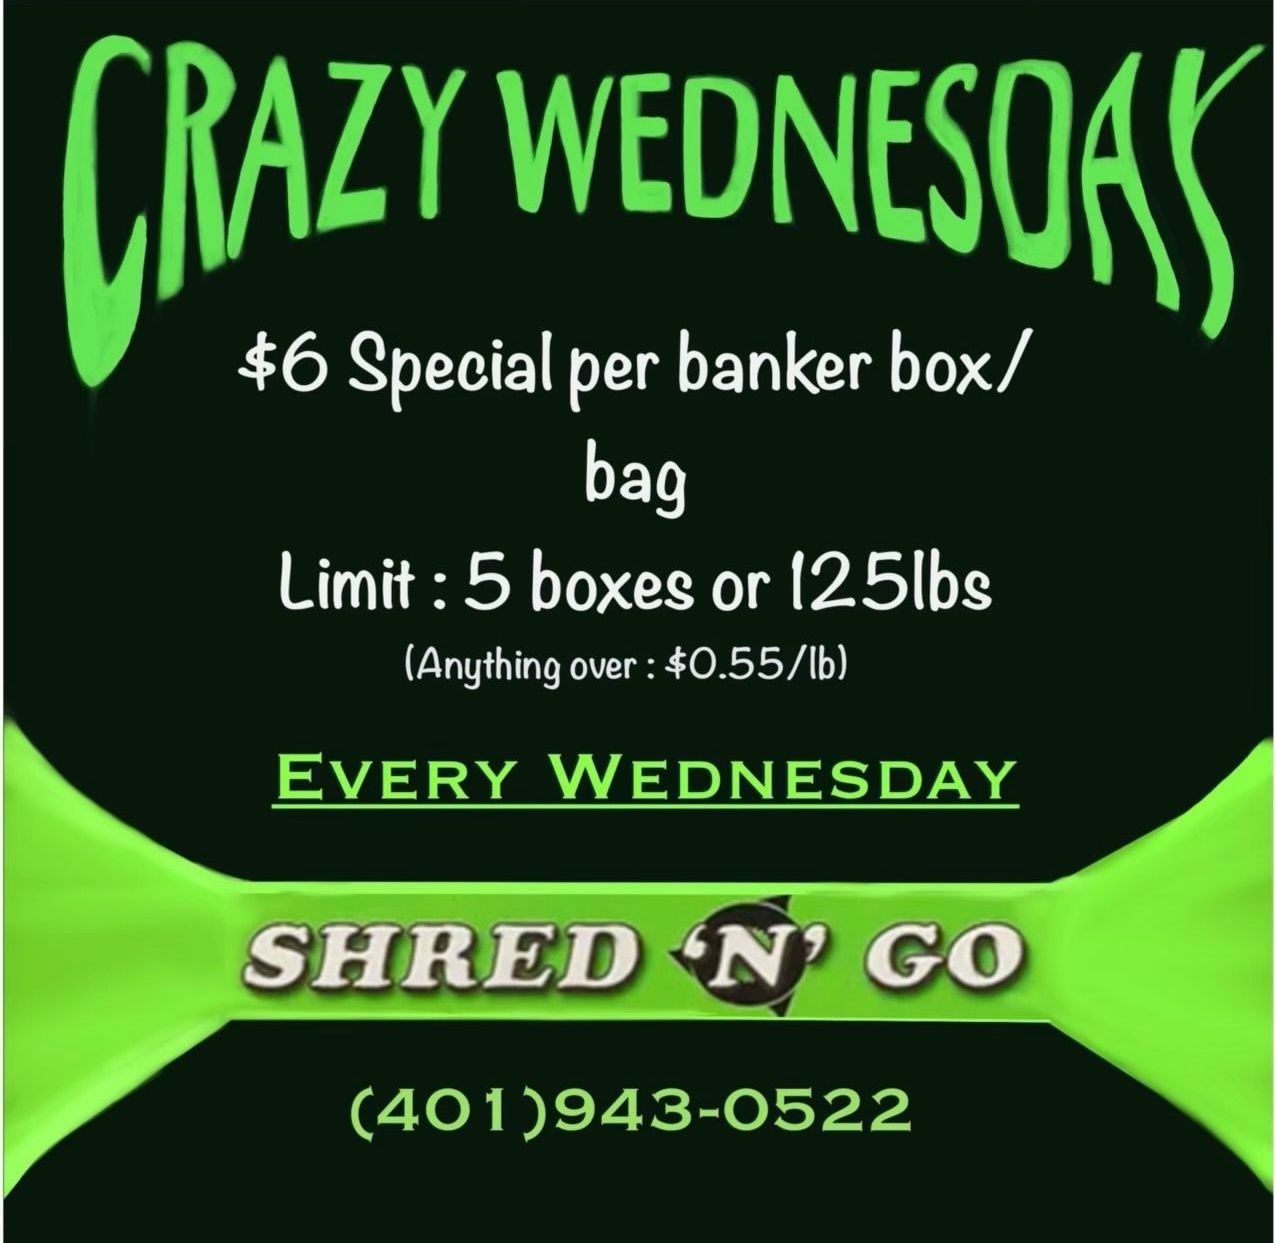 Crazy Wednesday Special Offer